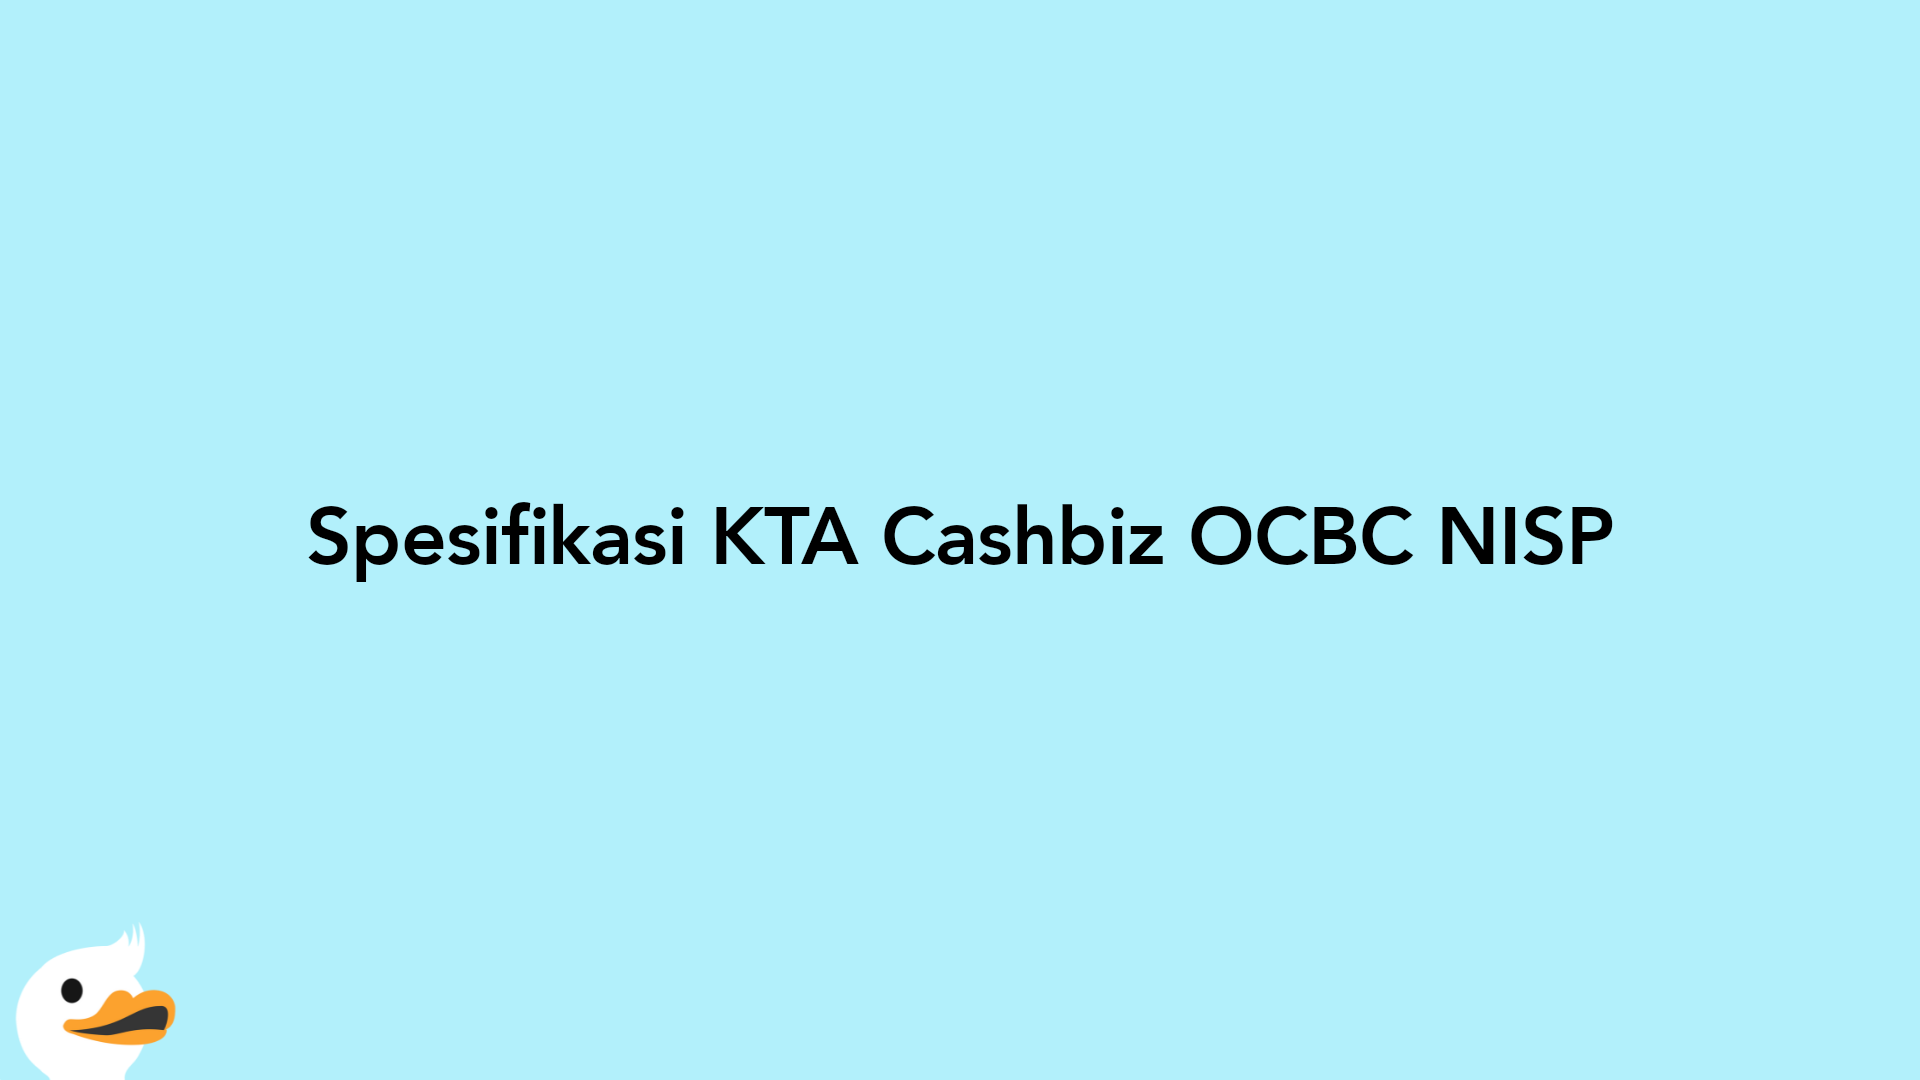 Spesifikasi KTA Cashbiz OCBC NISP